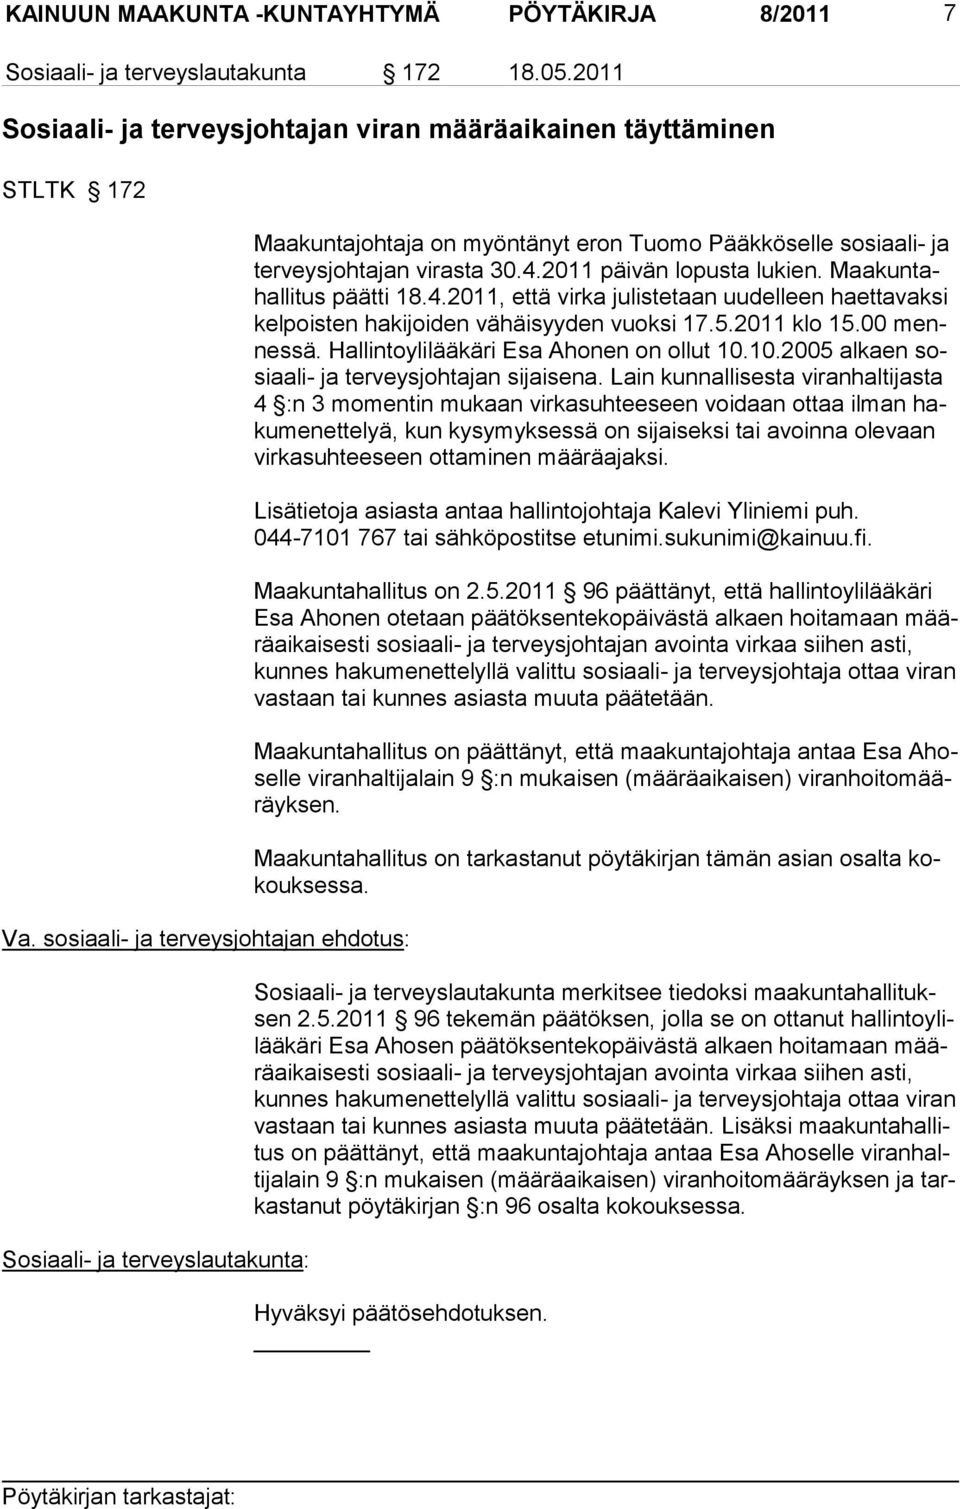 Maa kuntahallitus päätti 18.4.2011, että virka ju listetaan uu delleen haettavaksi kelpoisten hakijoiden vähäisyy den vuoksi 17.5.2011 klo 15.00 mennes sä. Hallintoylilääkäri Esa Ahonen on ollut 10.